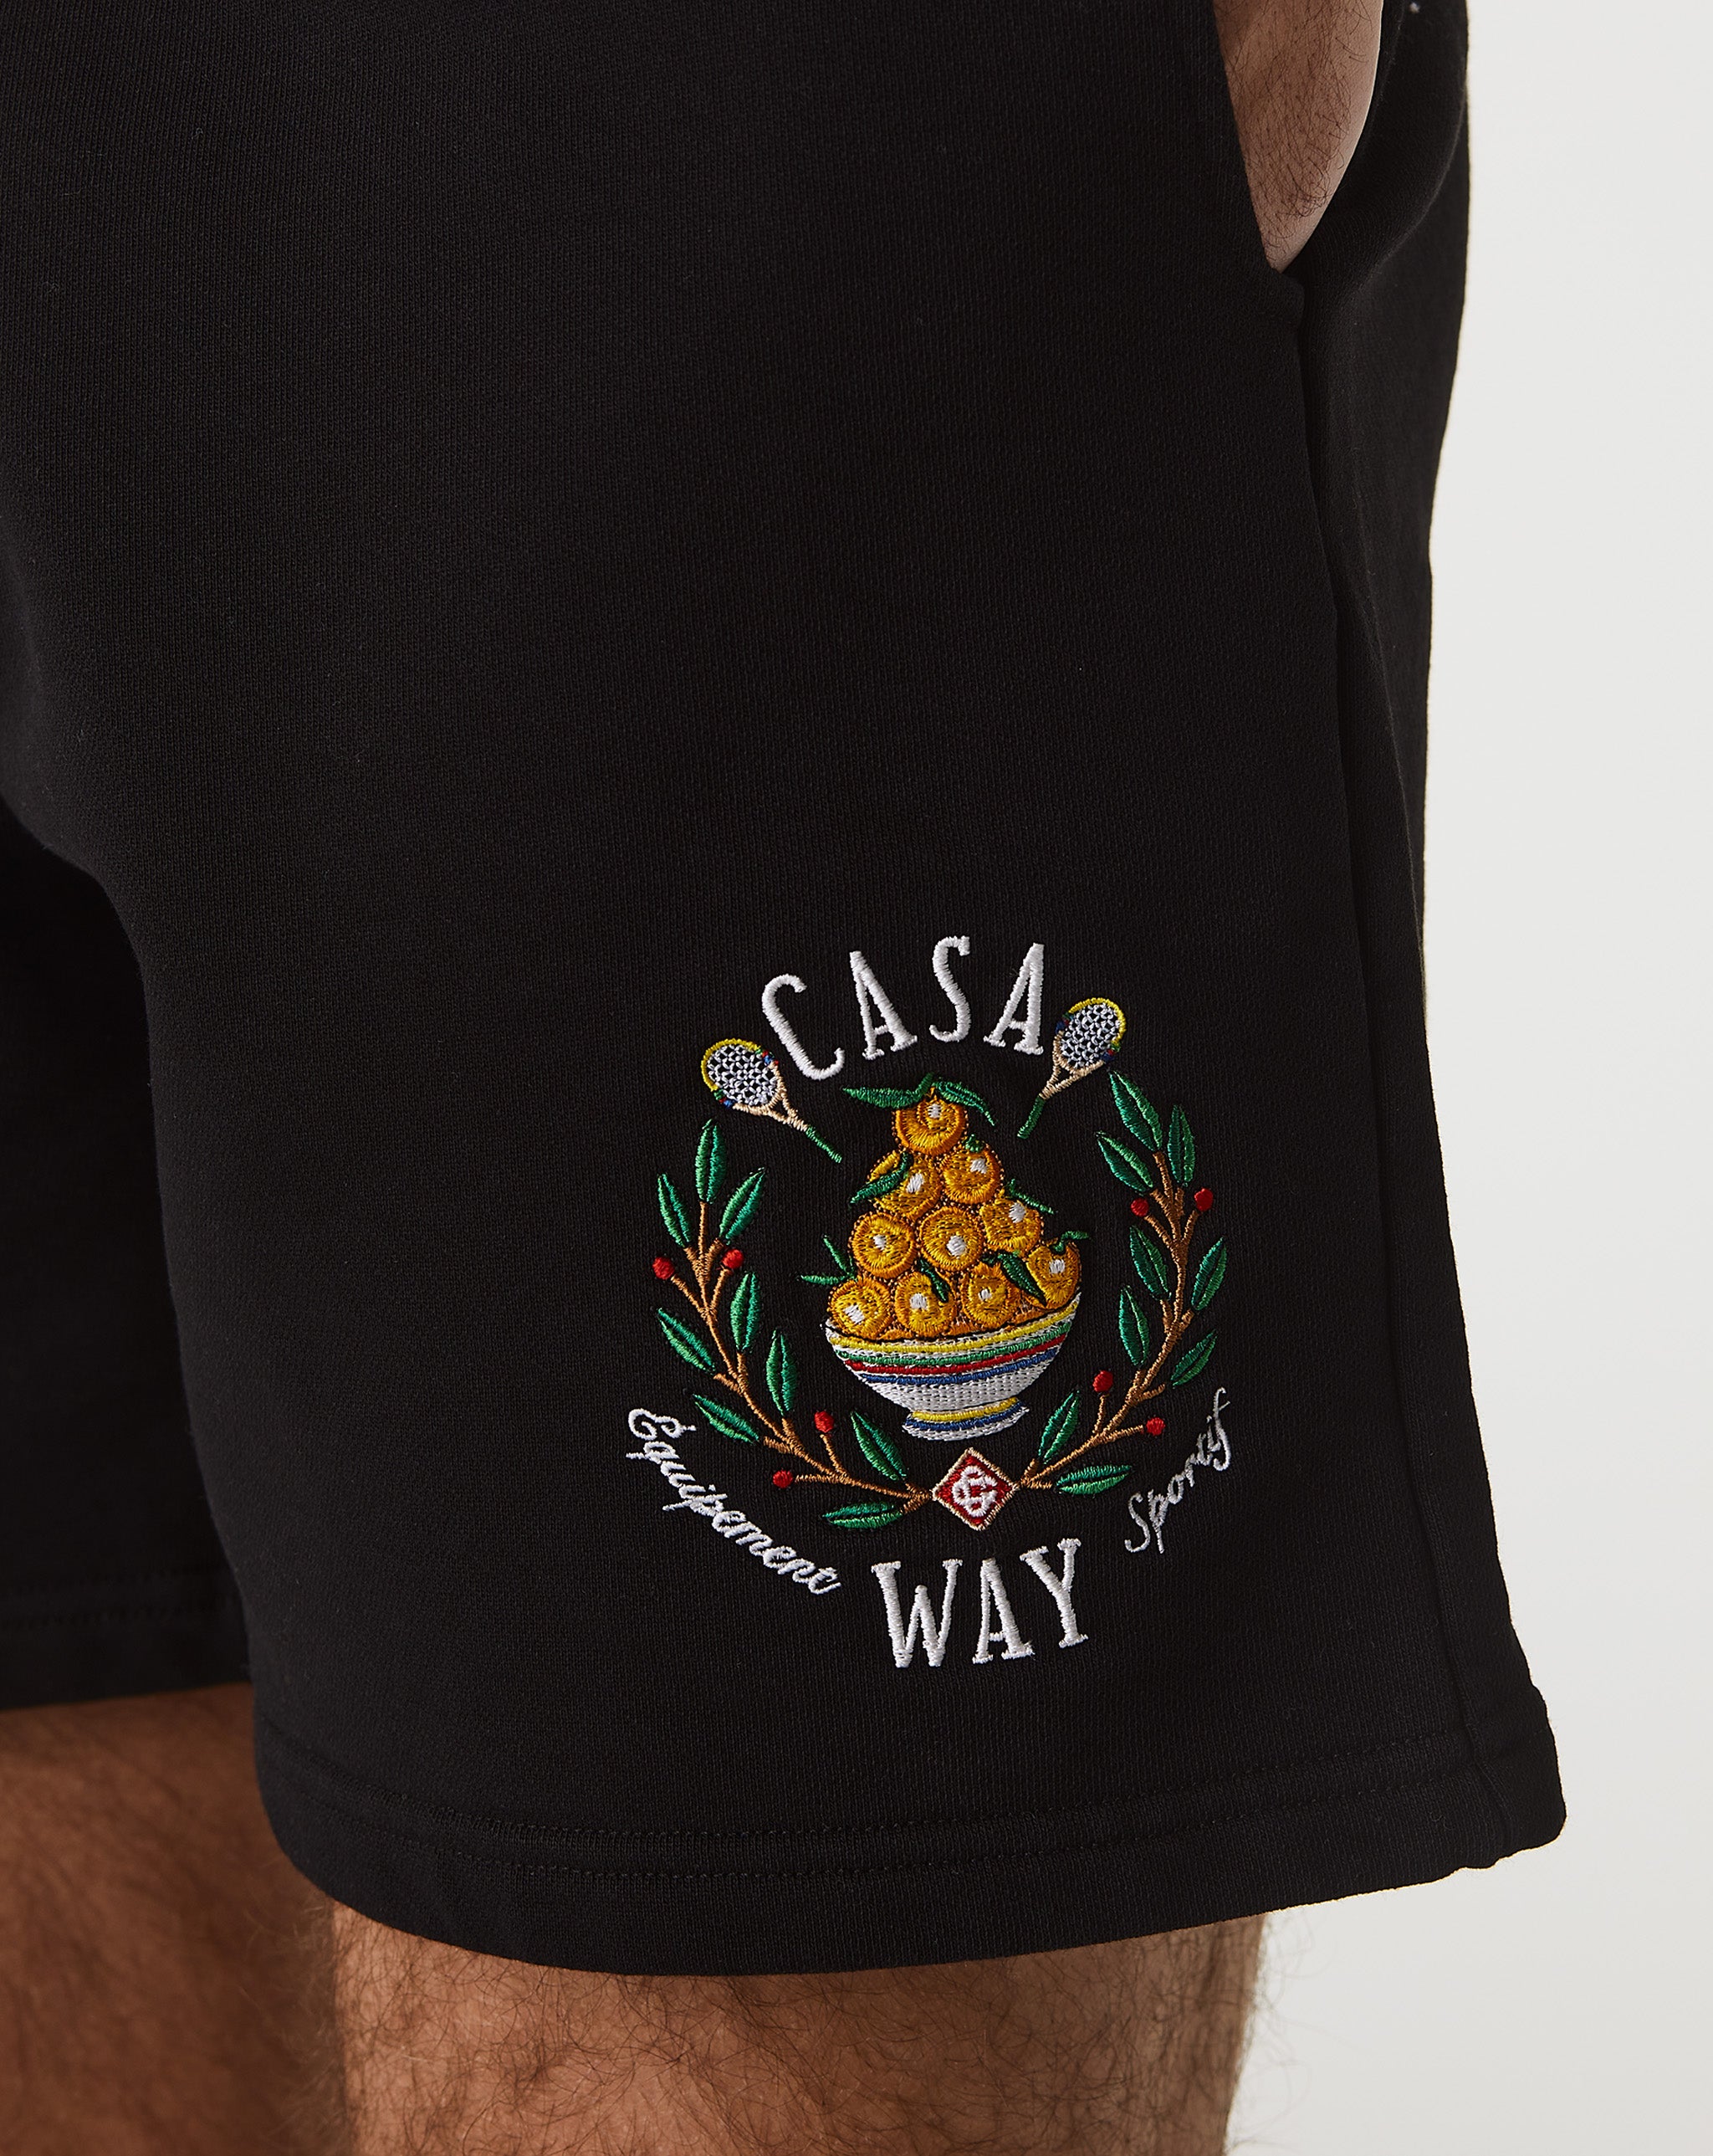 Casablanca Casa Way Embroidered Sweatshort  - Cheap Cerbe Jordan outlet